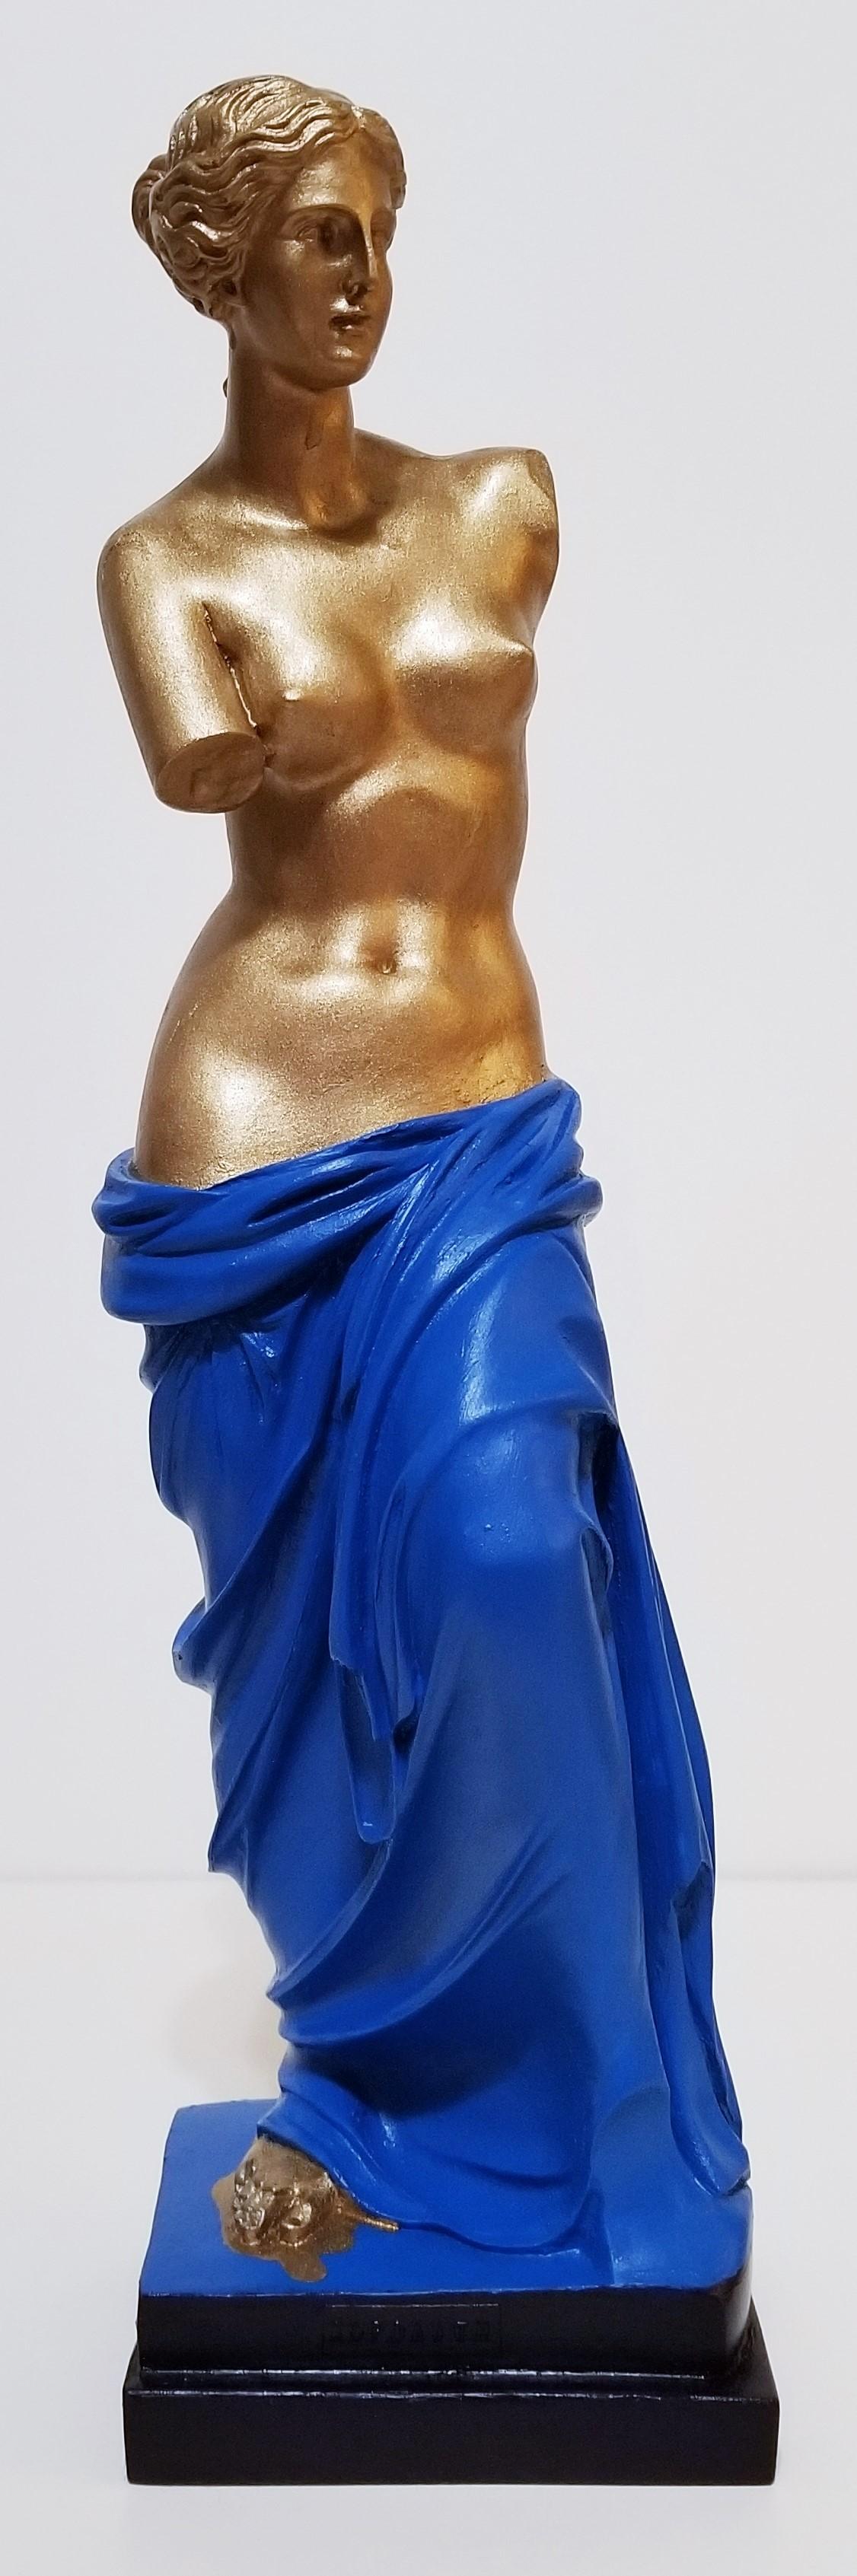 Jack Graves III Nude Sculpture - Venus de Milo Sculpture (Alexandros of Antioch) /// Contemporary Classics Nude